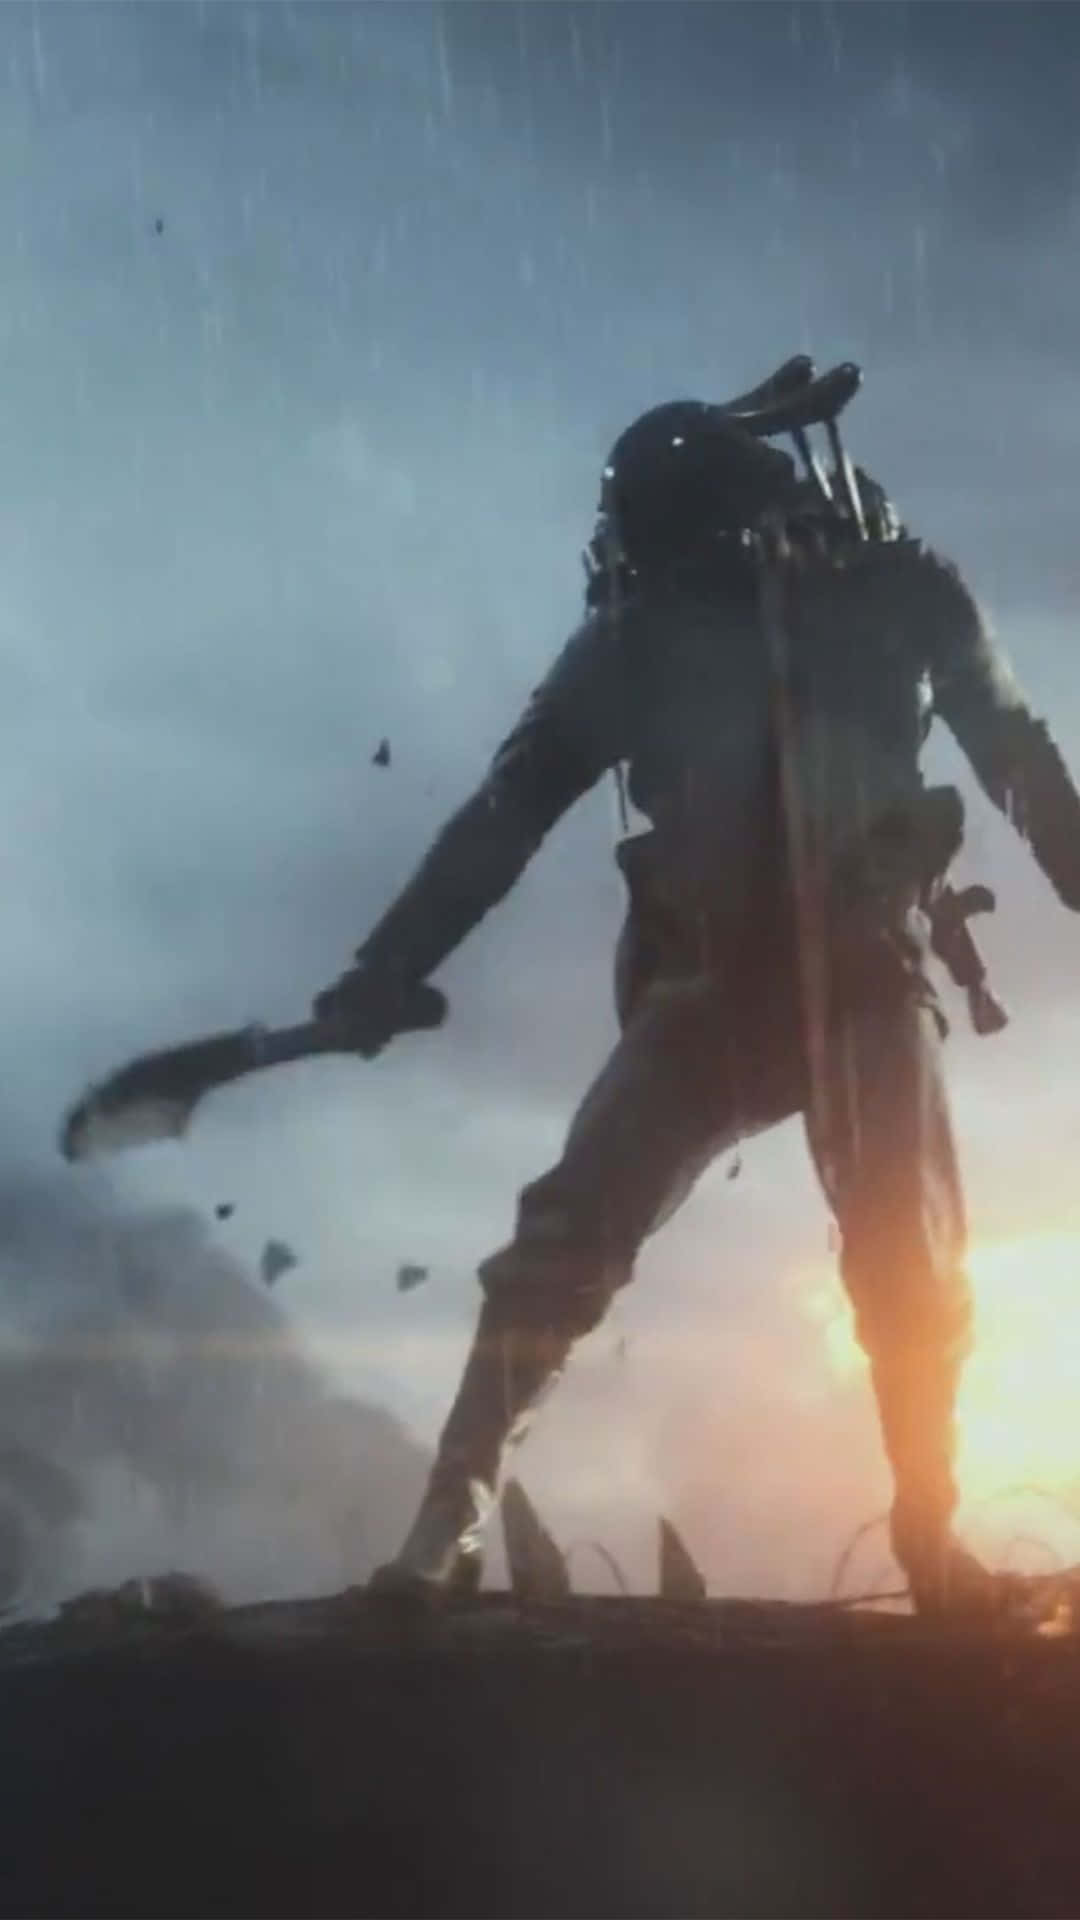 Androidbakgrundsbild För Battlefield 1 Med Soldat Som Håller En Köttyxa.